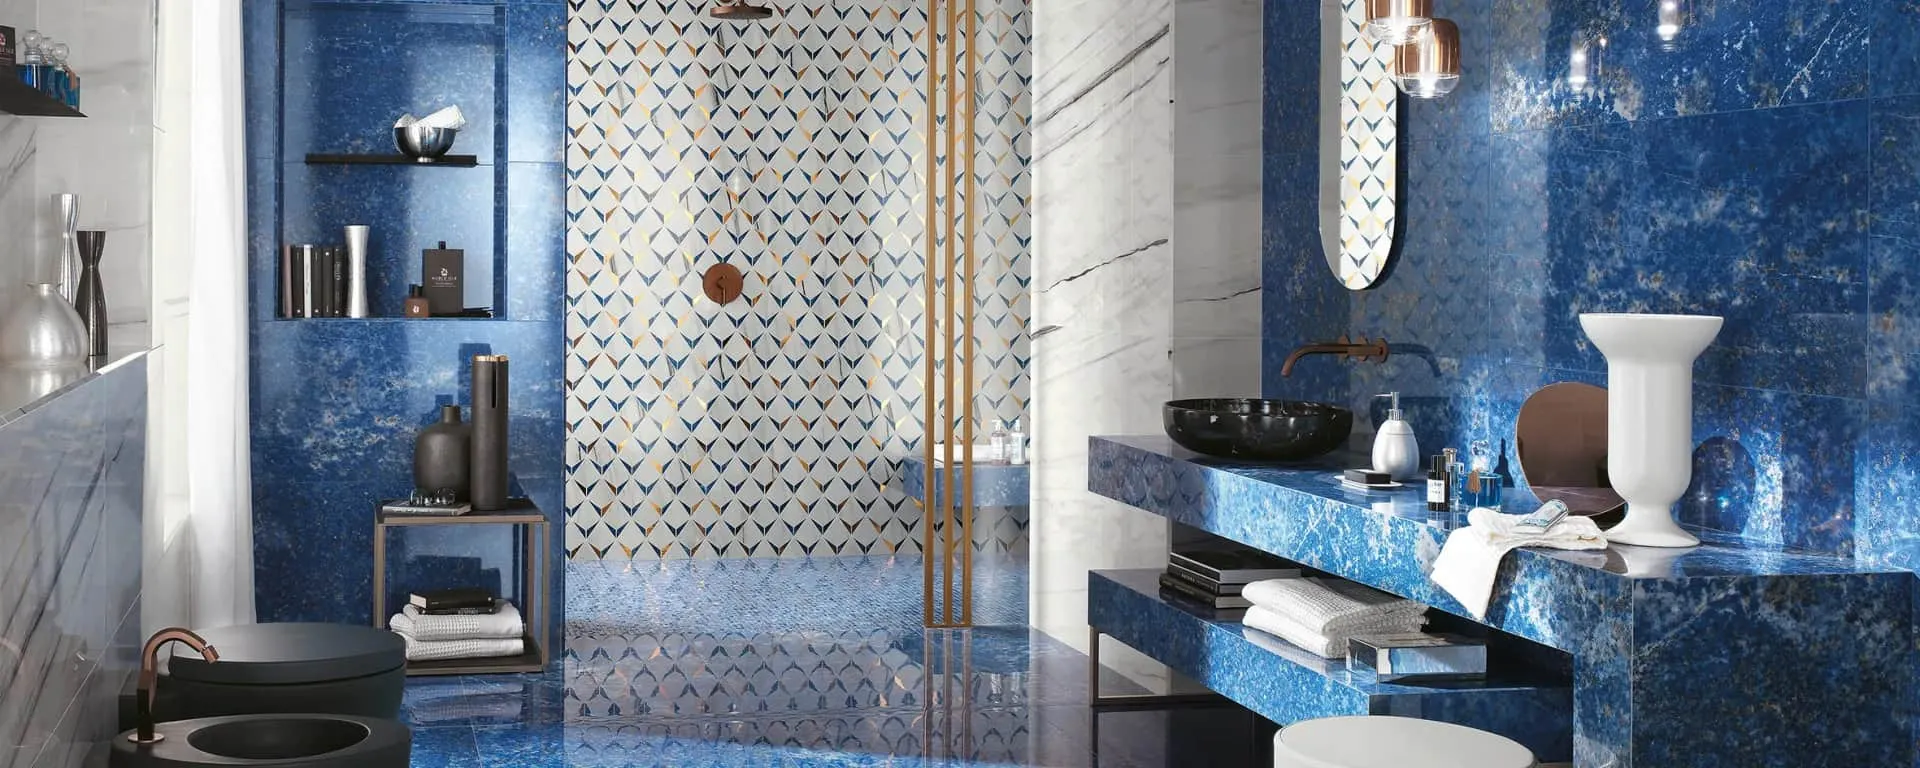 stunning blue and white designer bathroom flooring tiles & tiling design 